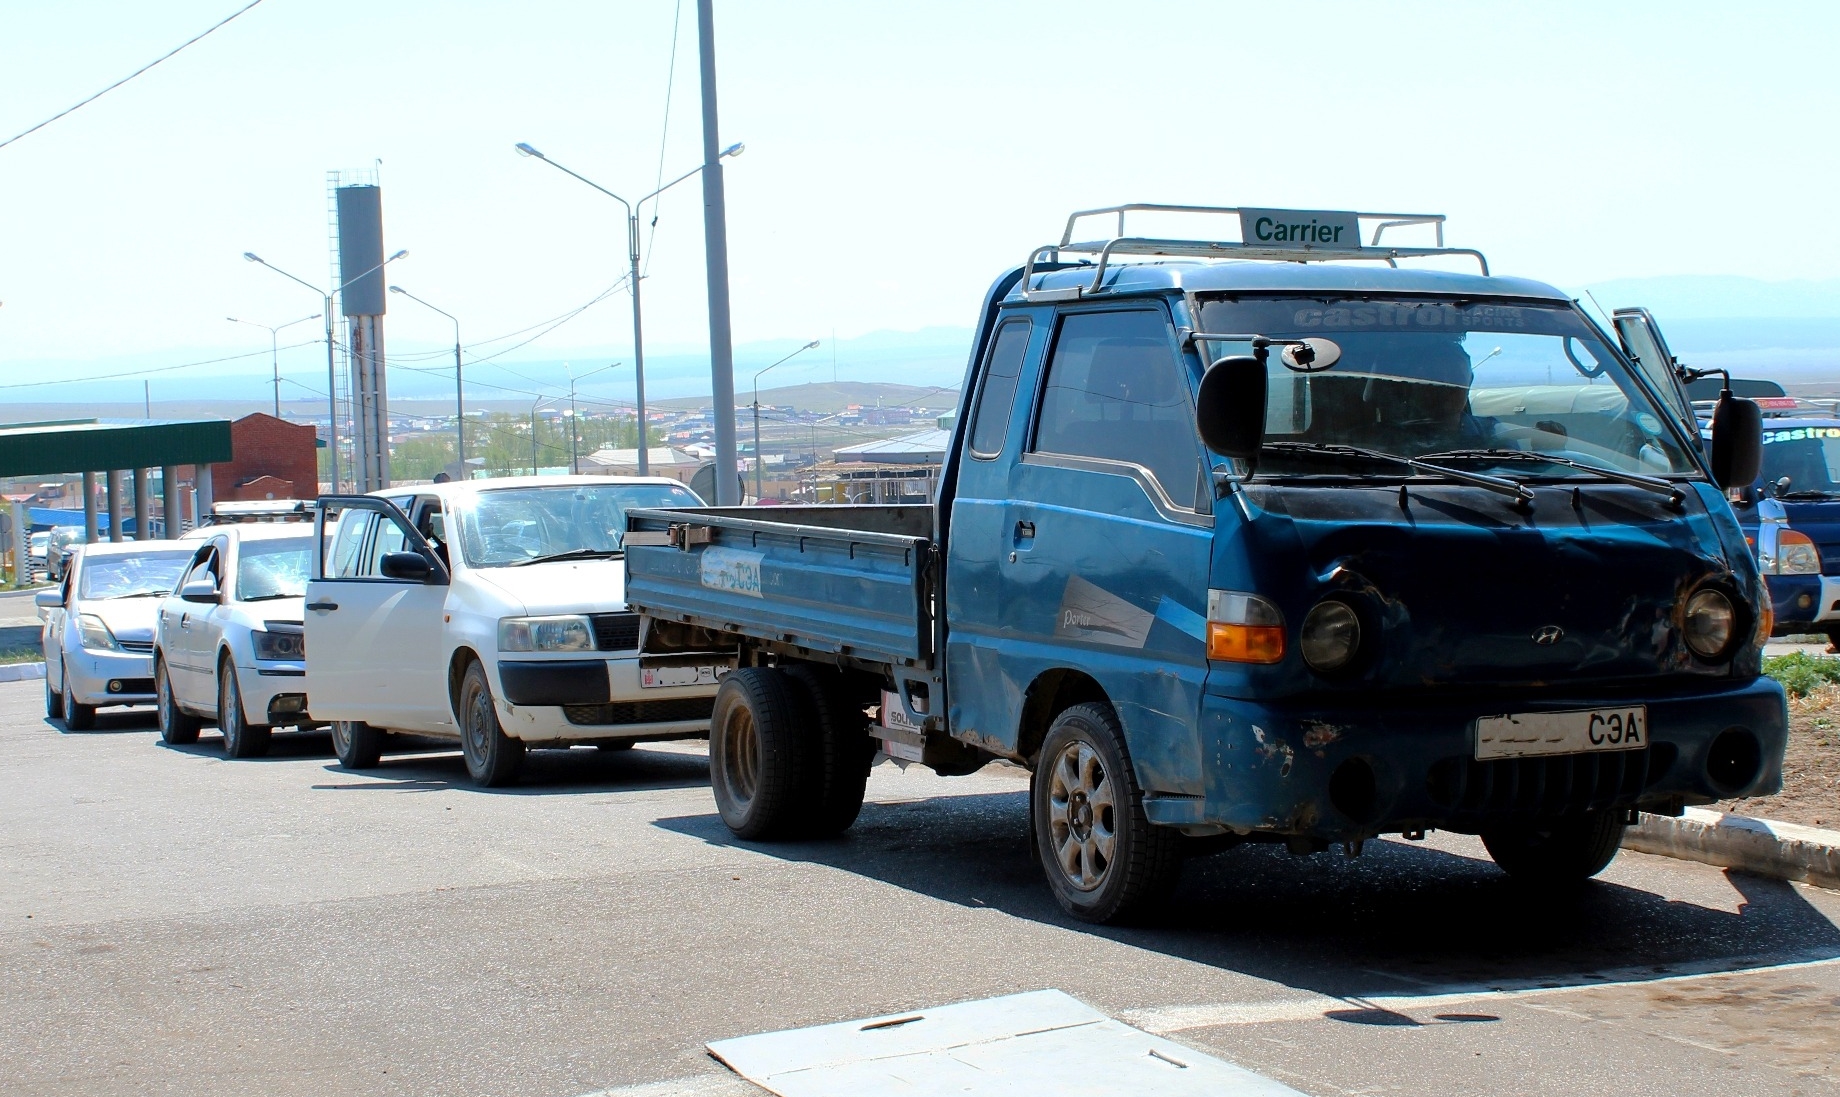 17 иностранцев нелегально ездили на автомобилях в Бурятии